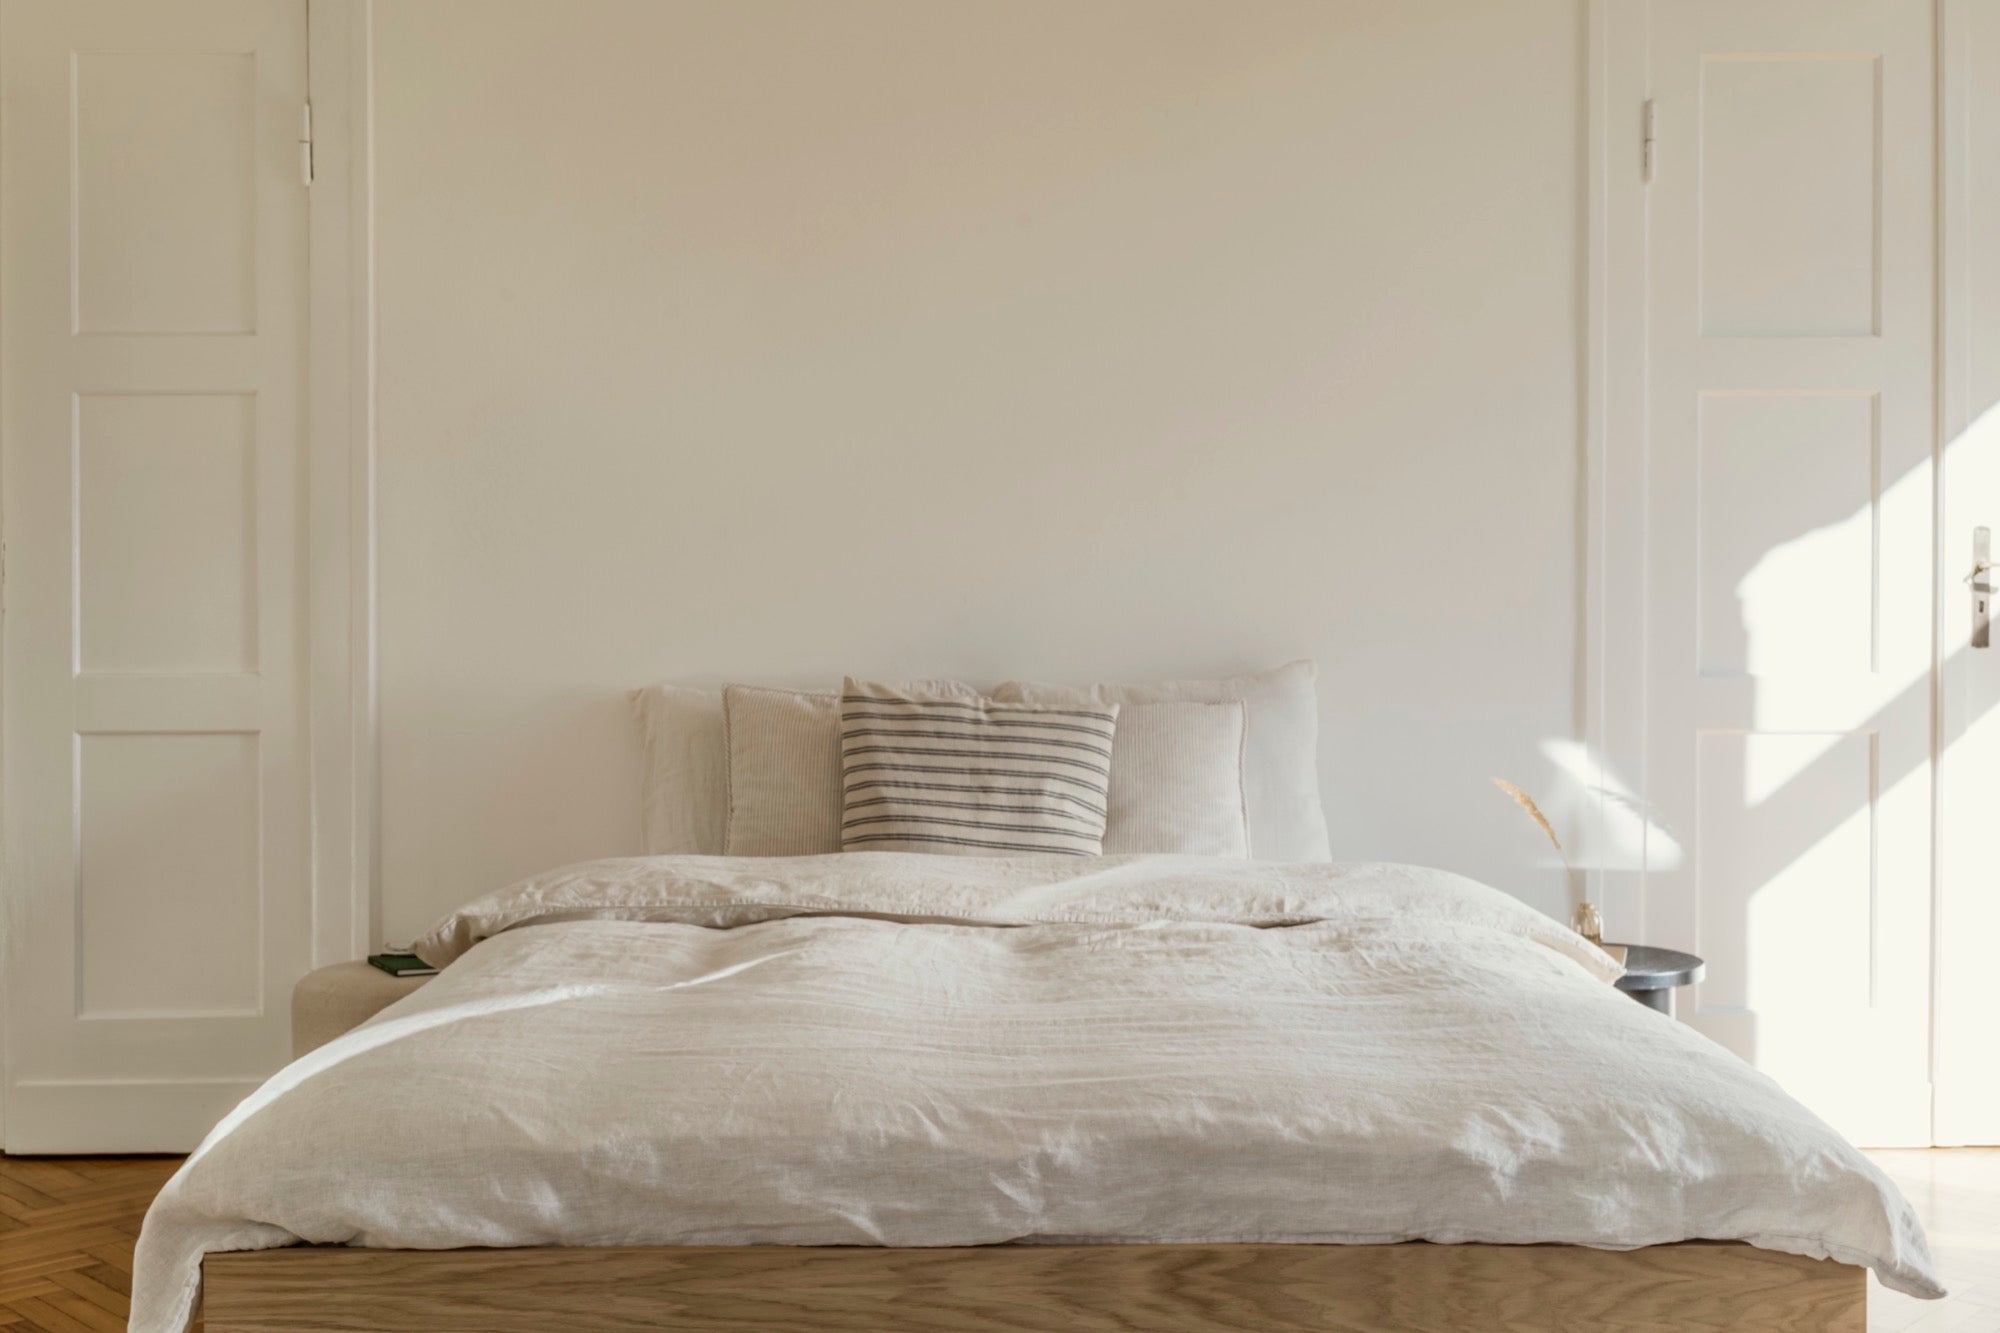 Schlafen Sie stilvoll mit unseren modernen Schlafzimmermöbeln, die Ihren Raum aufwerten und Ihre Erholung verbessern. Lassen Sie sich von gemütlichen und ästhetischen Ideen für Ihr Schlafzimmer inspirieren: Betten mit Kopfbretter, Nachttischen, Bänke, Ambientebeleuchtung und mehr.